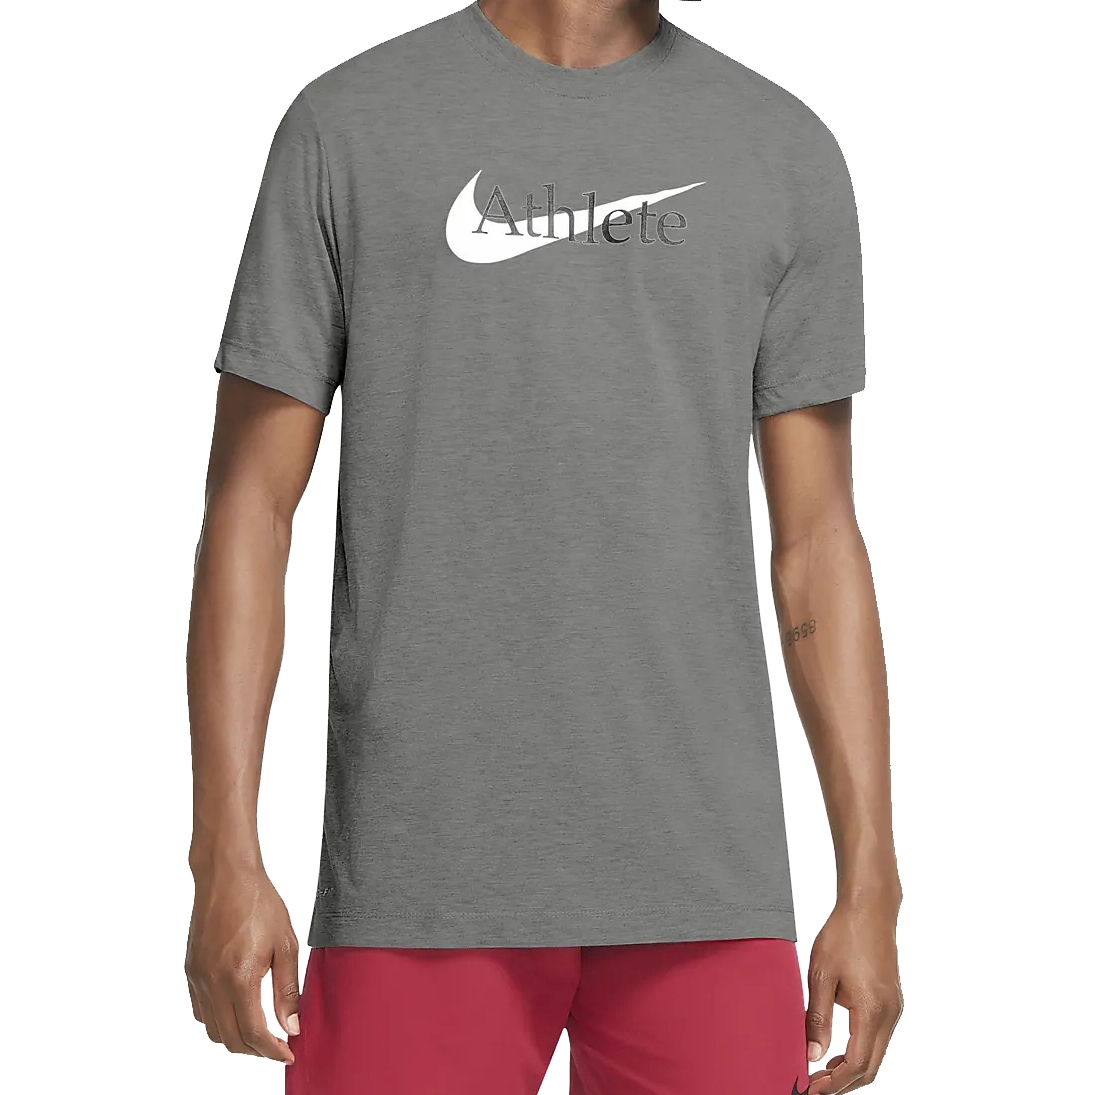 Produktbild von Nike Dri-FIT Trainings-T-Shirt mit Swoosh für Herren - dark grey heather CW6950-063